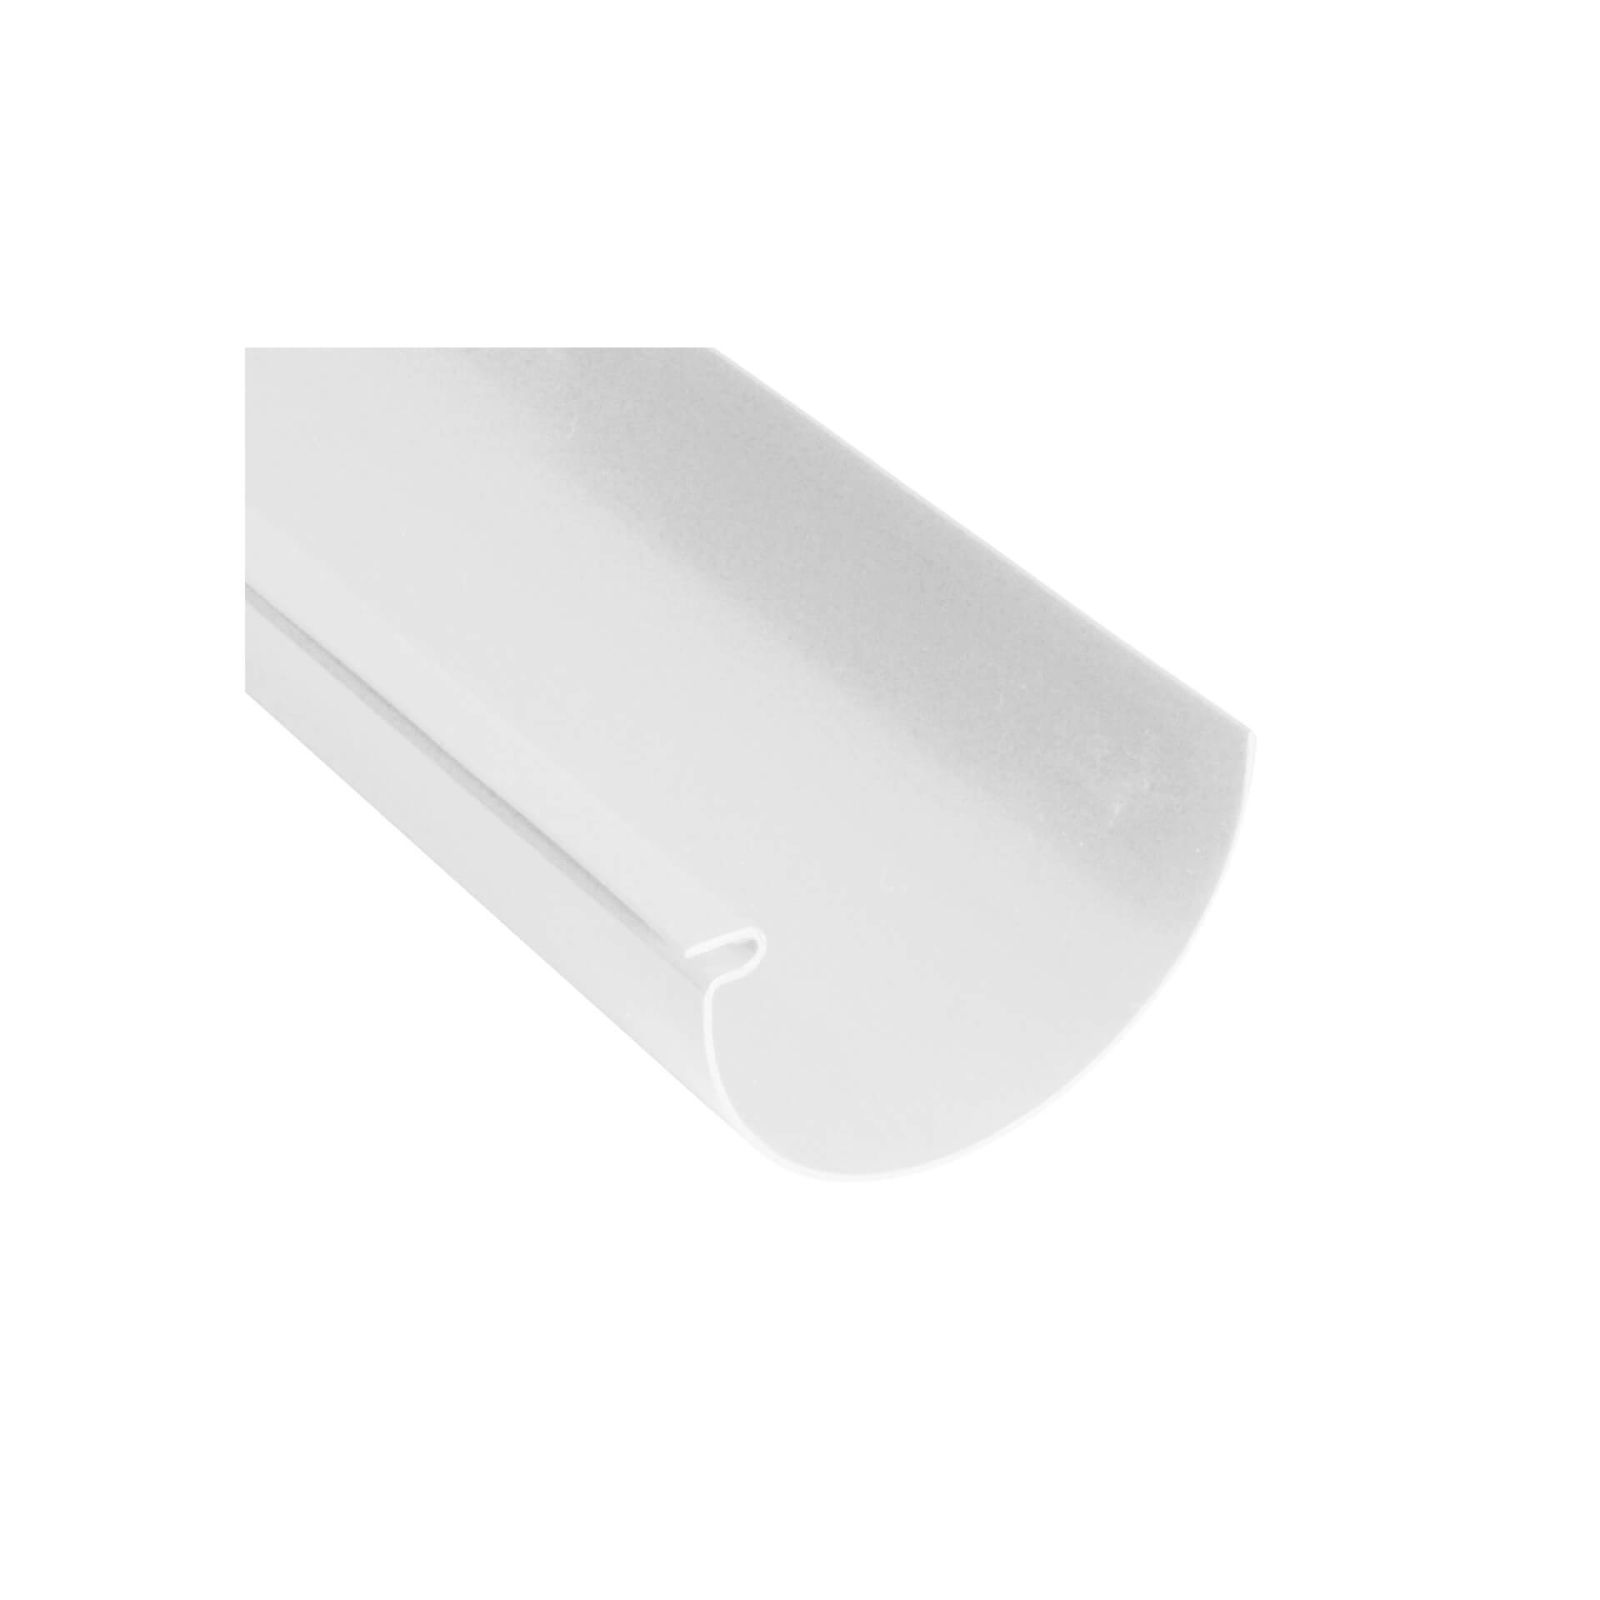 Kunststoff Dachrinnen Sparpaket 4 m | Ø 100/75 mm | Farbe Weiß #1